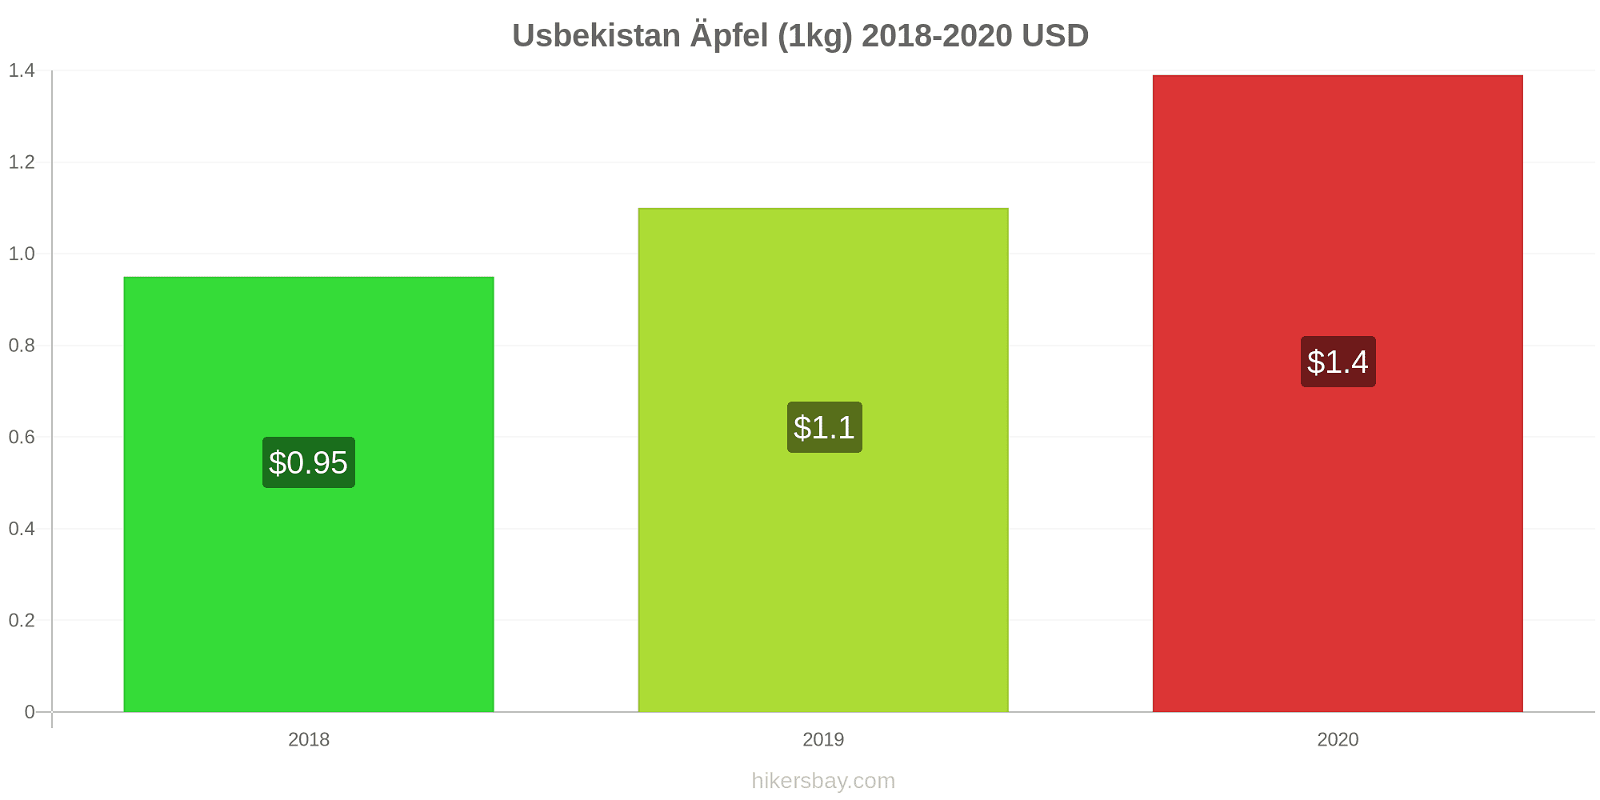 Usbekistan Preisänderungen Äpfel (1kg) hikersbay.com